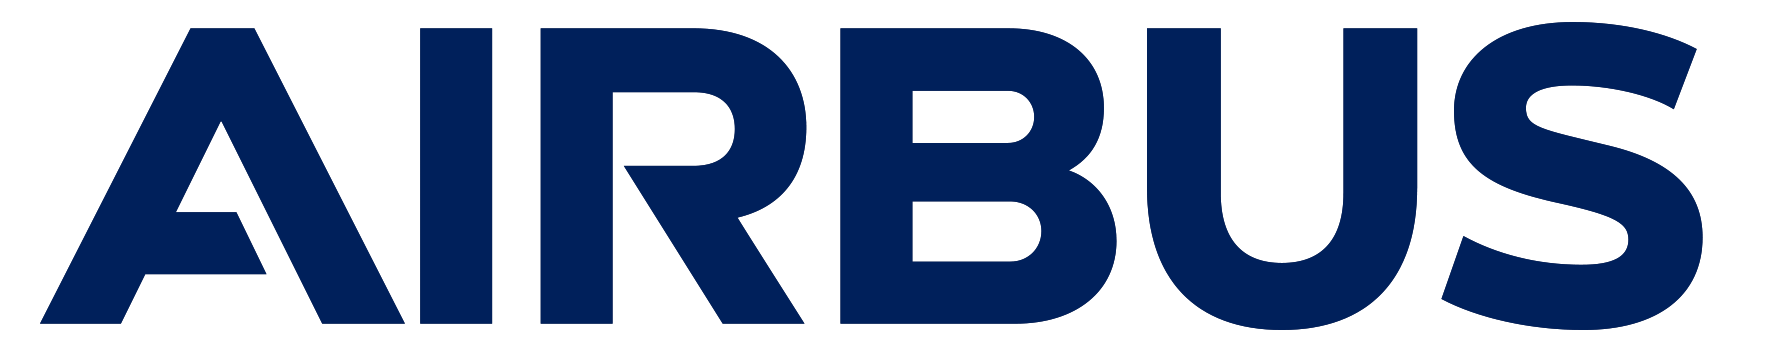 Airbus_logo_2017